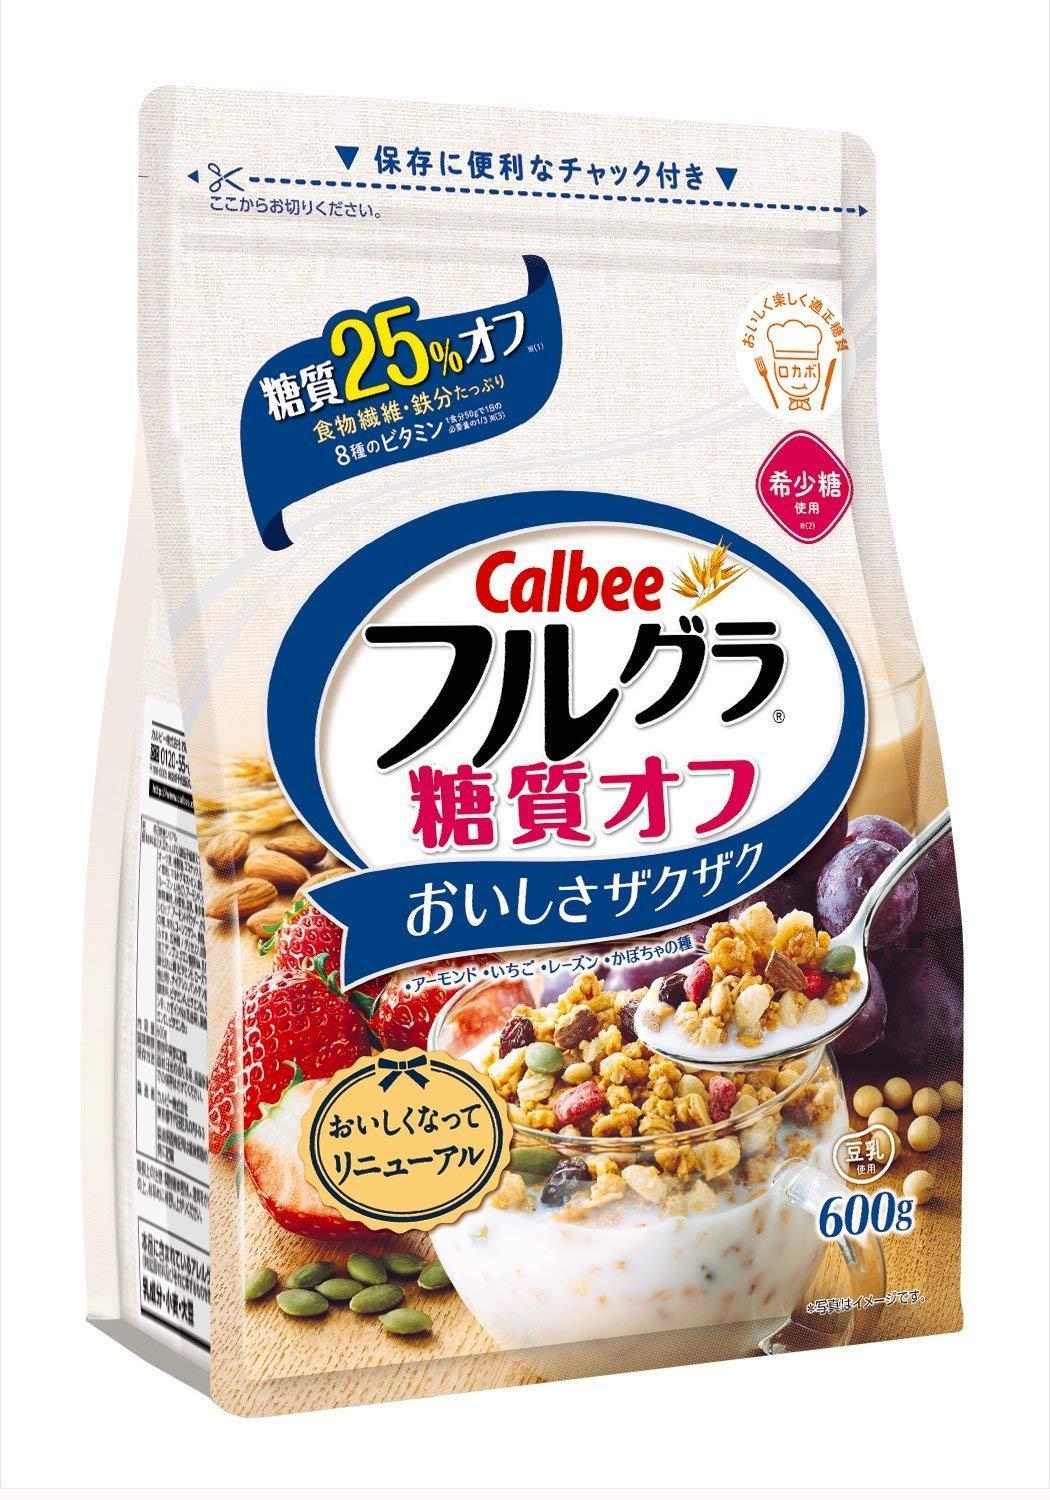 Ngũ cốc Calbee Nhật Bản 600g màu trắng date Tháng 4.2019 Hạnh Nhân, dâu bí nho và các loại trái...